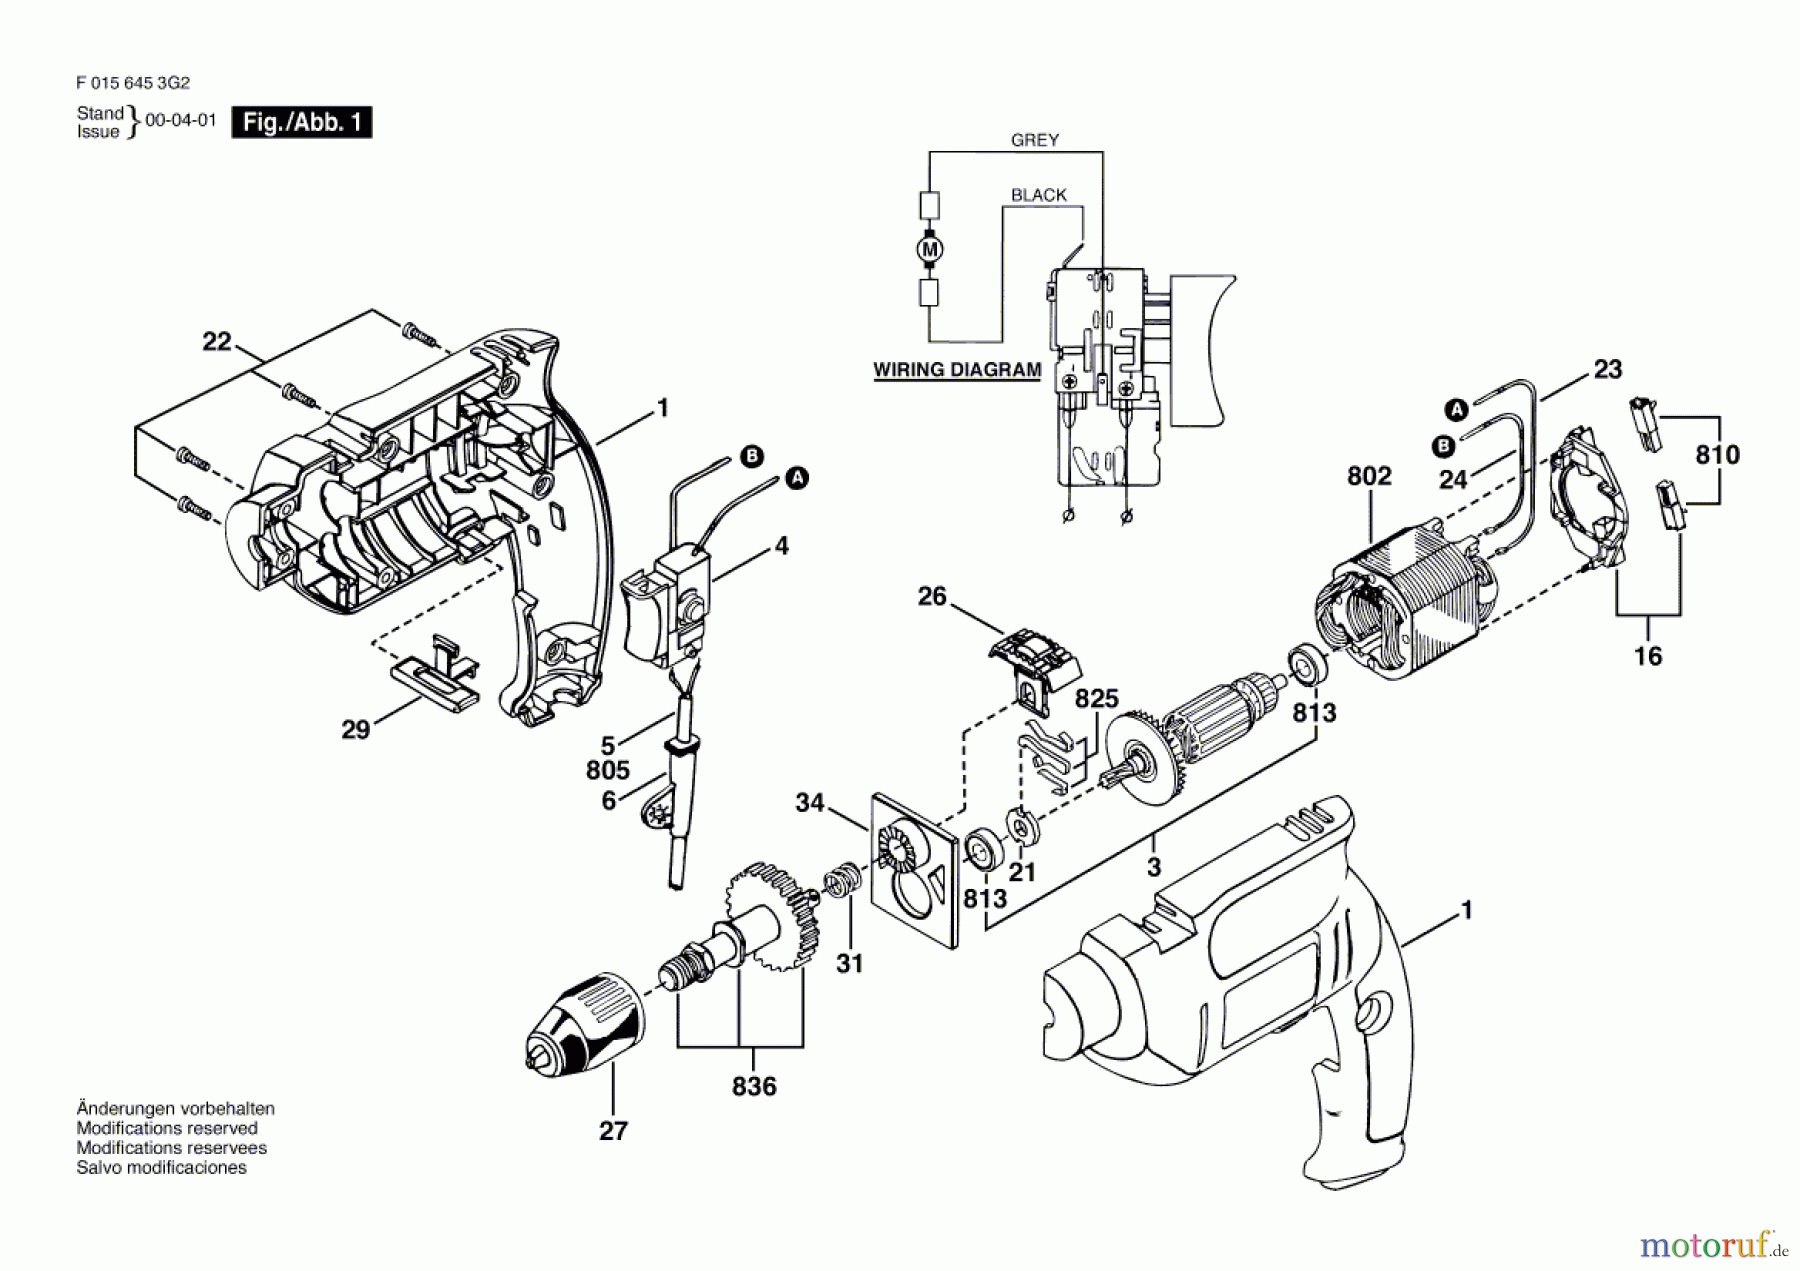  Bosch Werkzeug Ratsche 6453 Seite 1